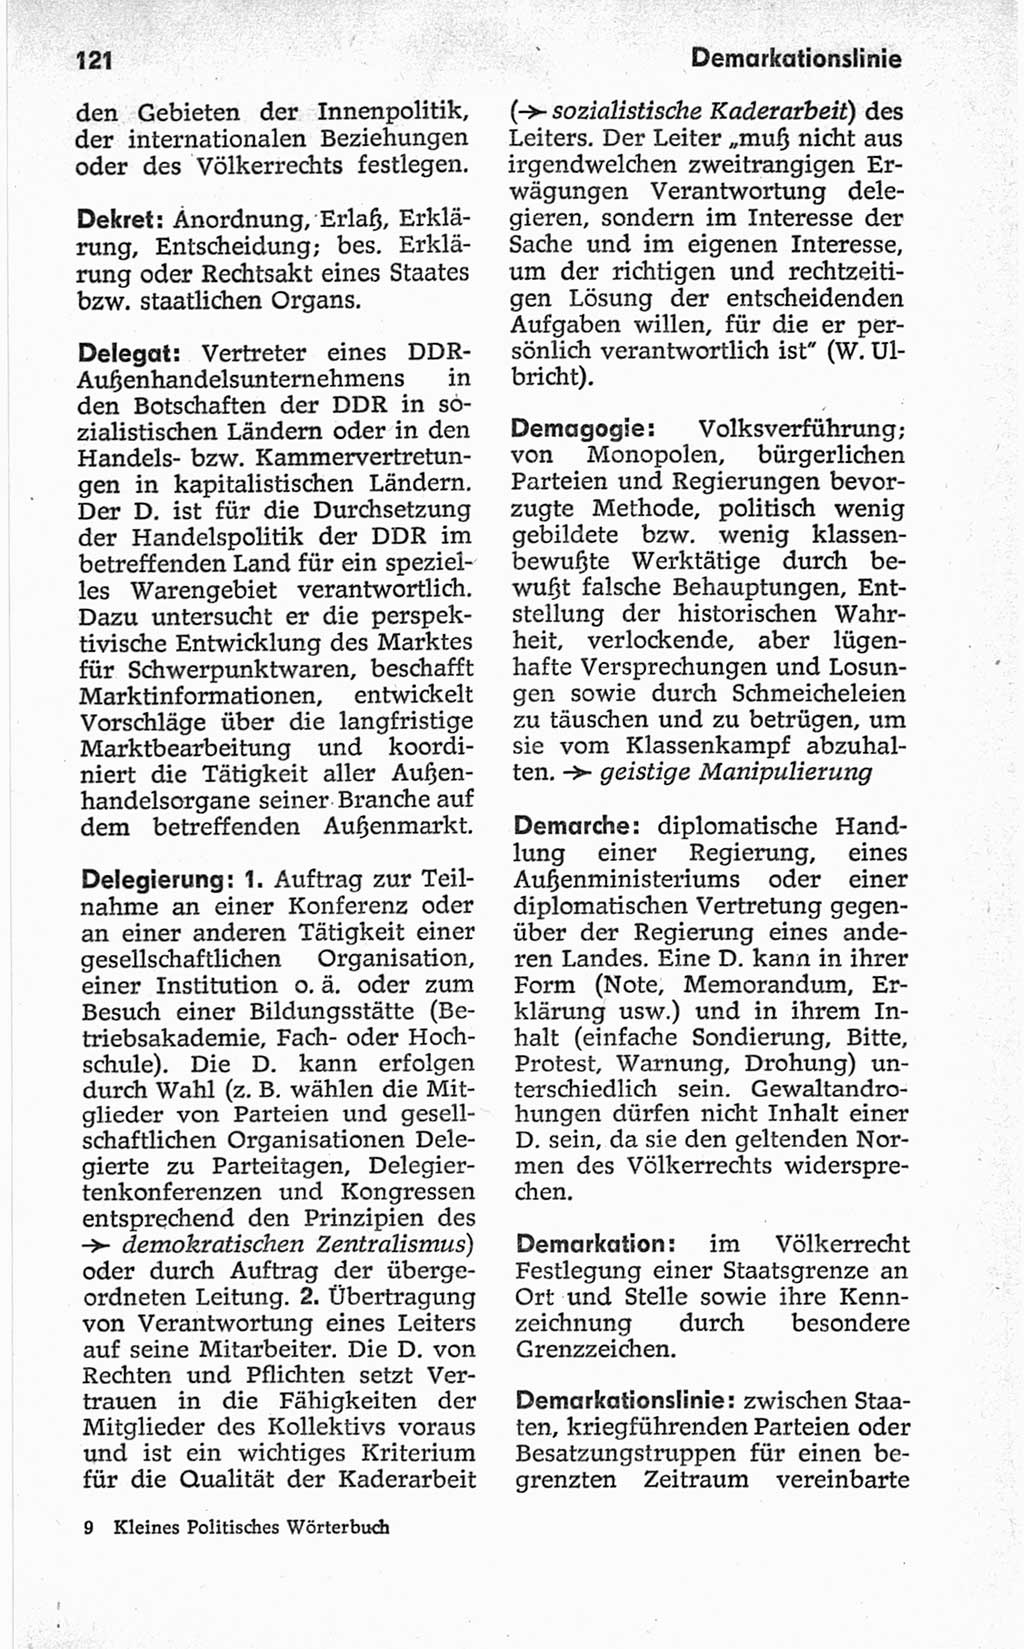 Kleines politisches Wörterbuch [Deutsche Demokratische Republik (DDR)] 1967, Seite 121 (Kl. pol. Wb. DDR 1967, S. 121)